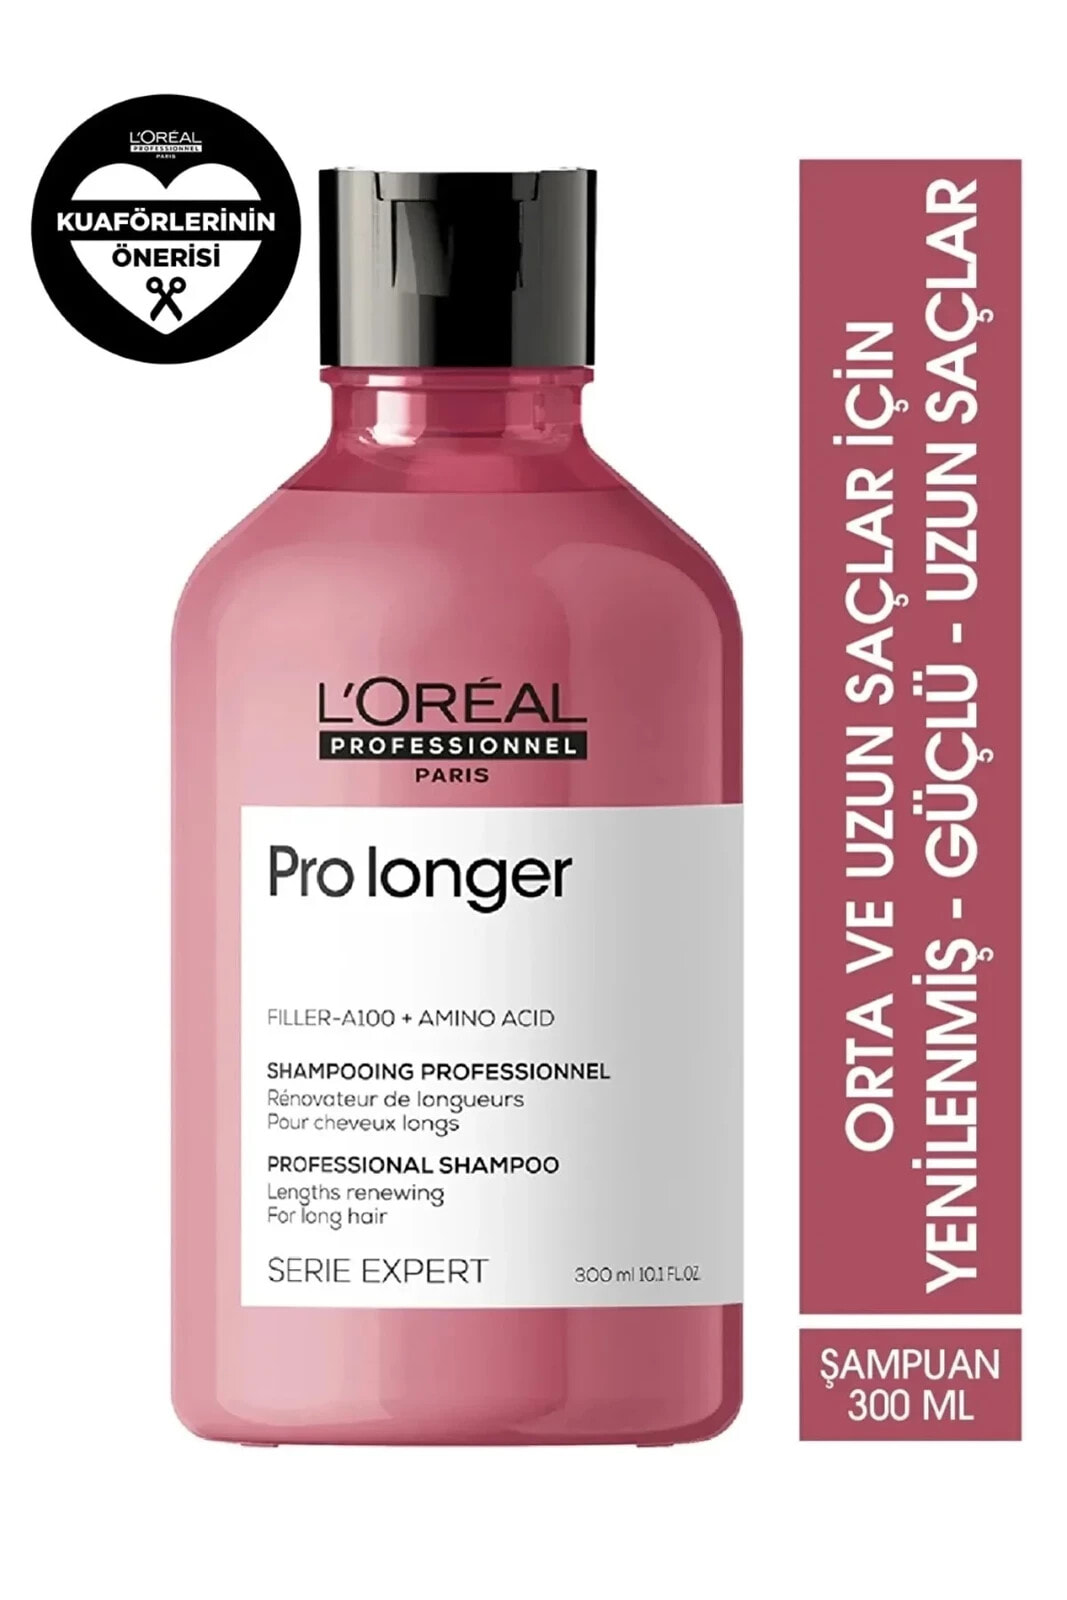 LOREAL Pro Longer Mükemmel Uzun Saçlar İçin YGüçlendirici-Parlak Şampuan 300ml 10.1 fl oz CYT7944642